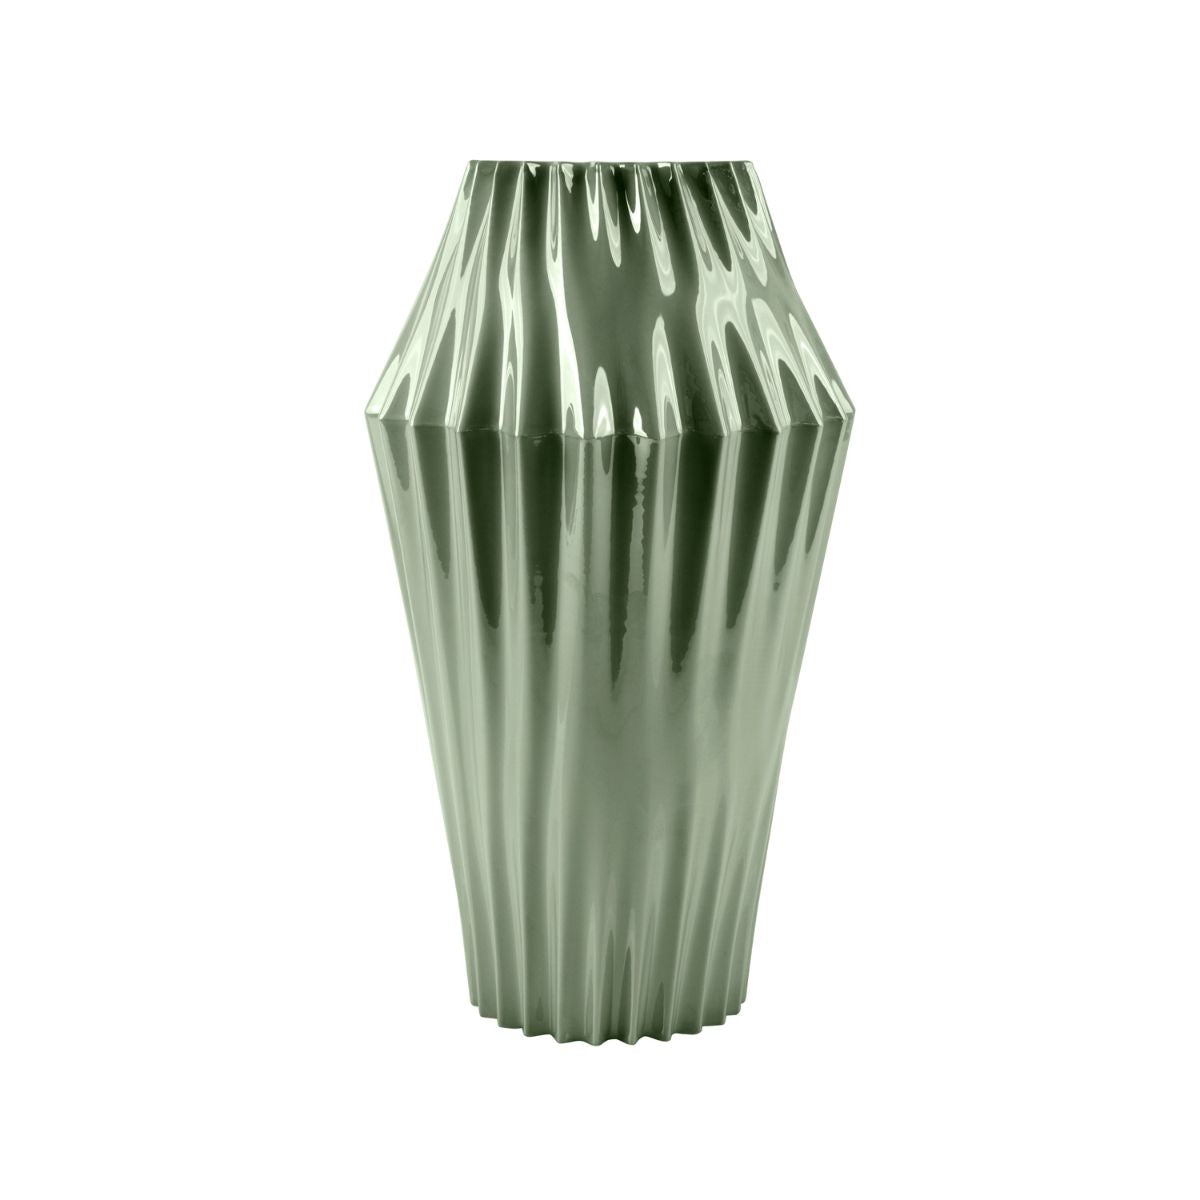 Vertigo Medium Vase - Pearly Green 